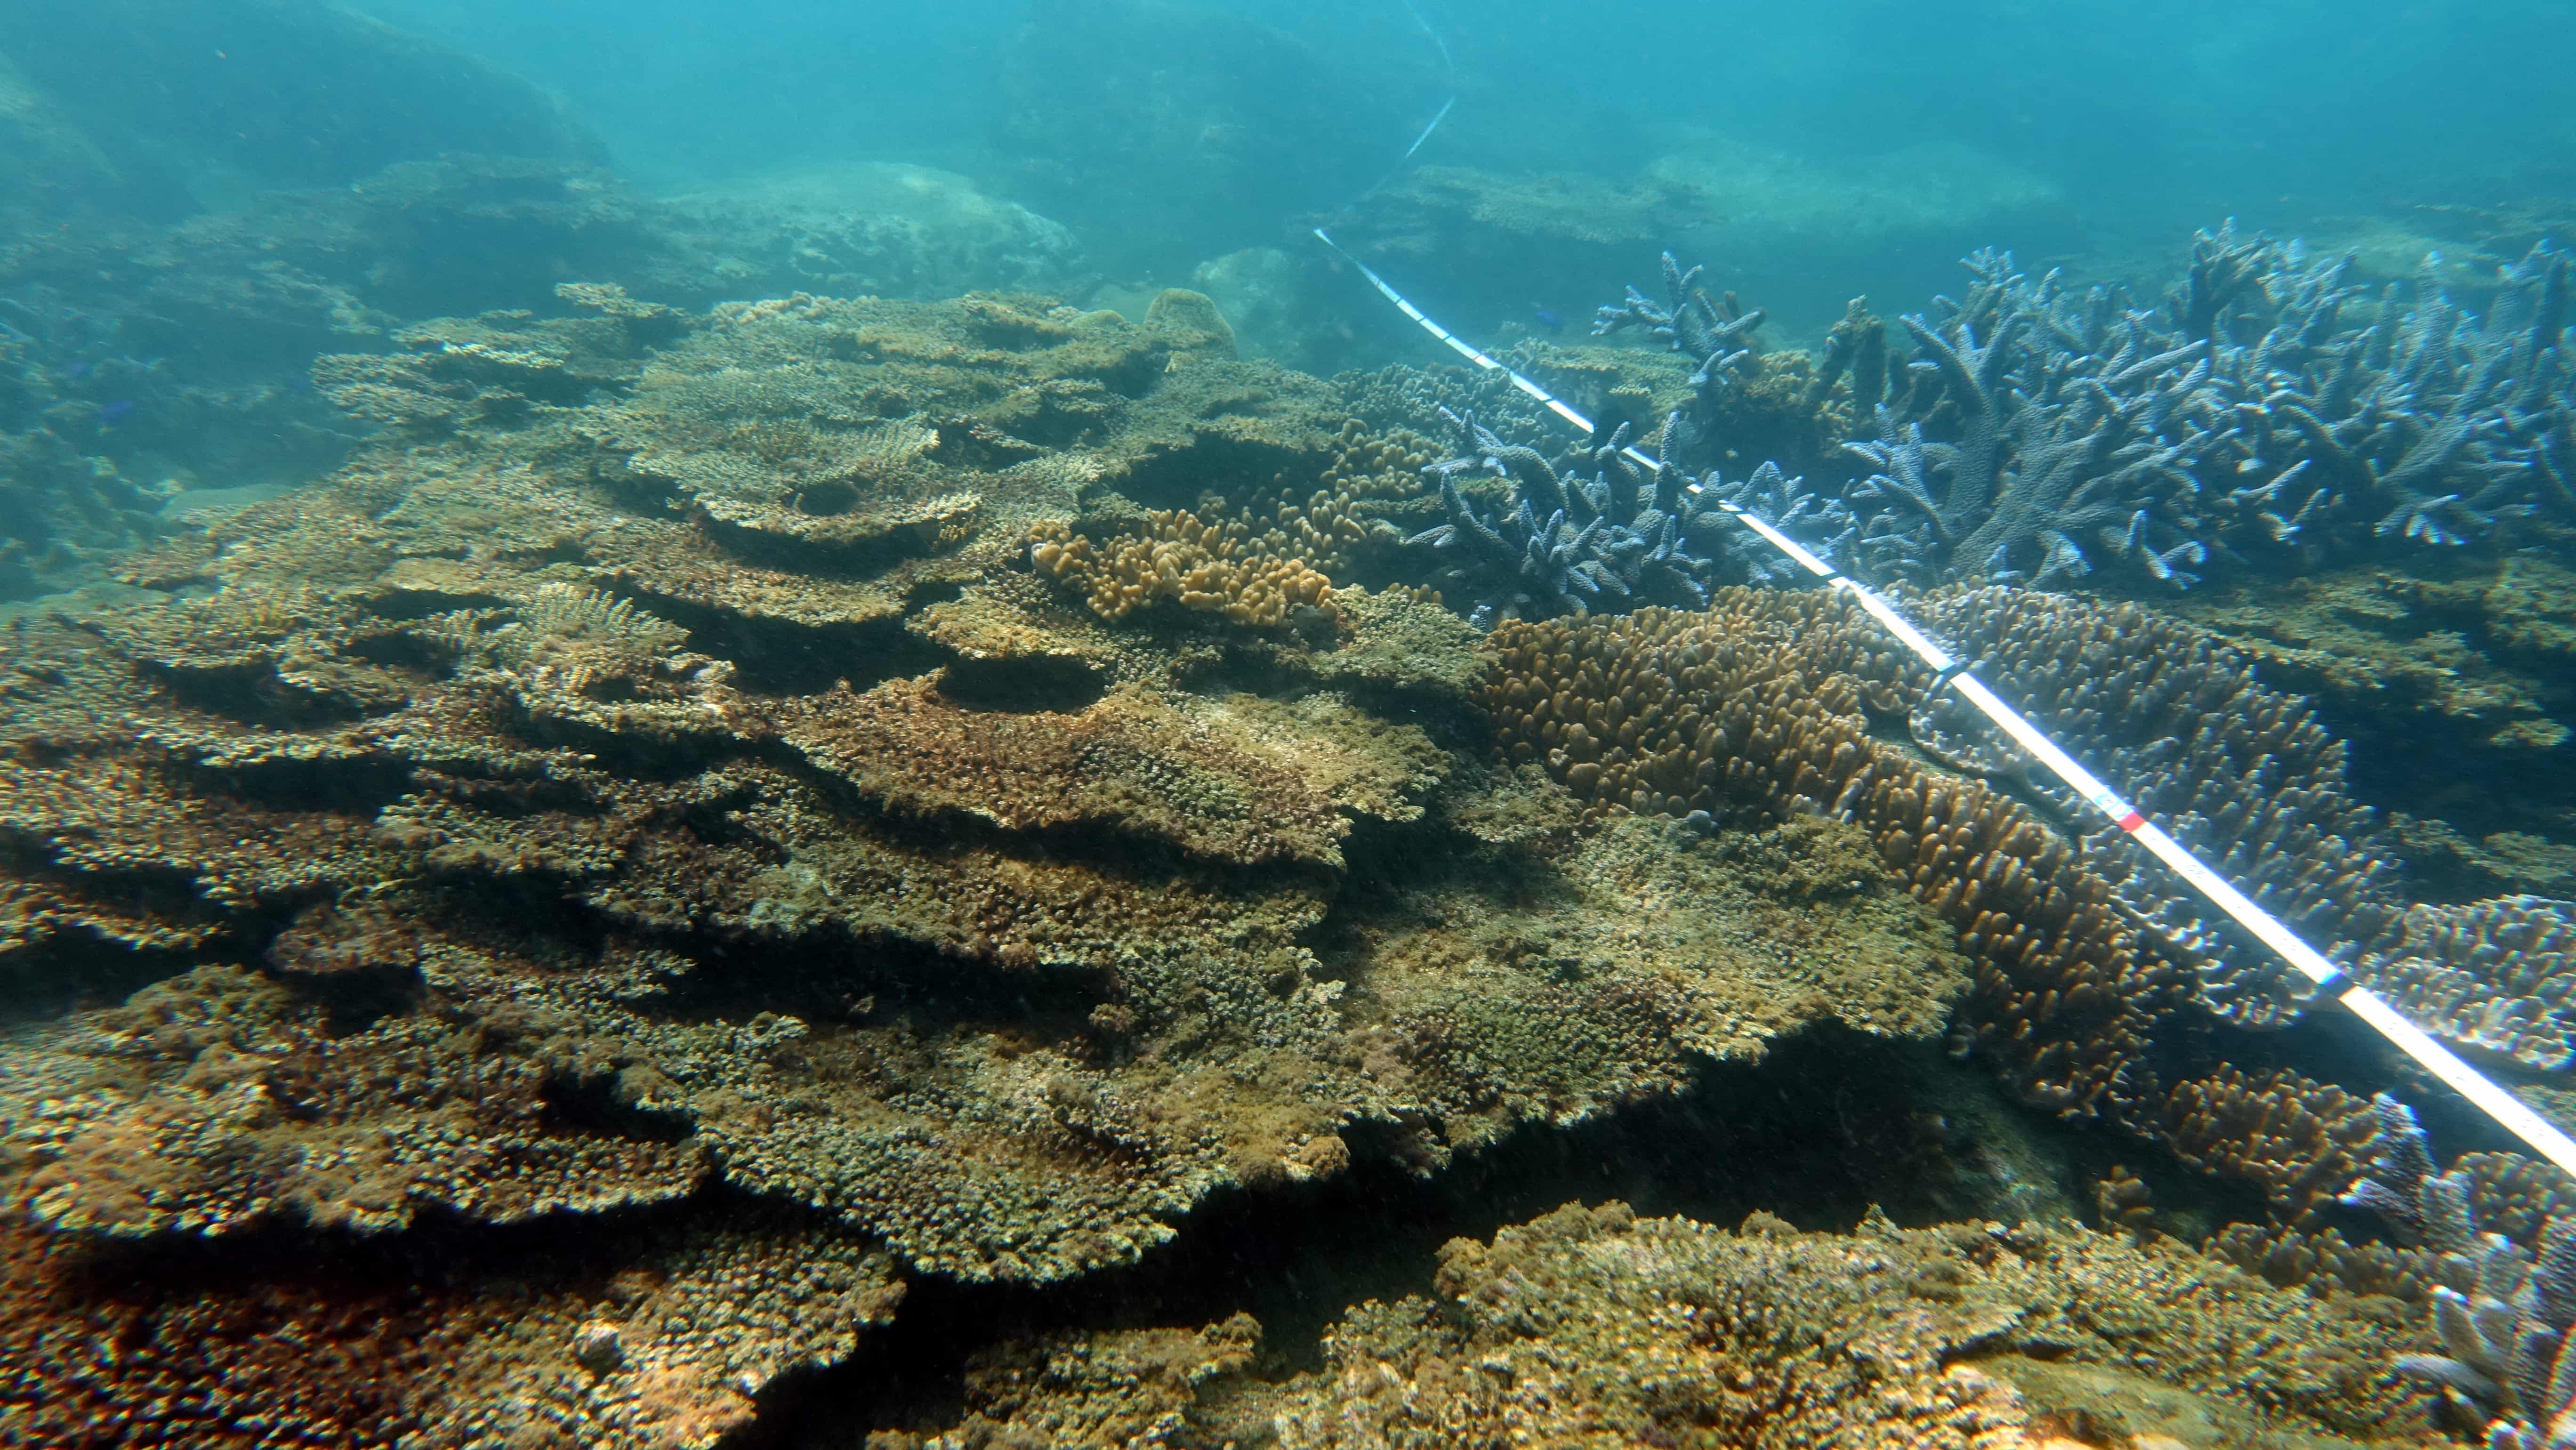 西嶼坪南側的珊瑚生長情形，在測線左邊珊瑚群體已覆蓋藻類；右邊為仍存活的軸孔珊瑚及小枝軟珊瑚。